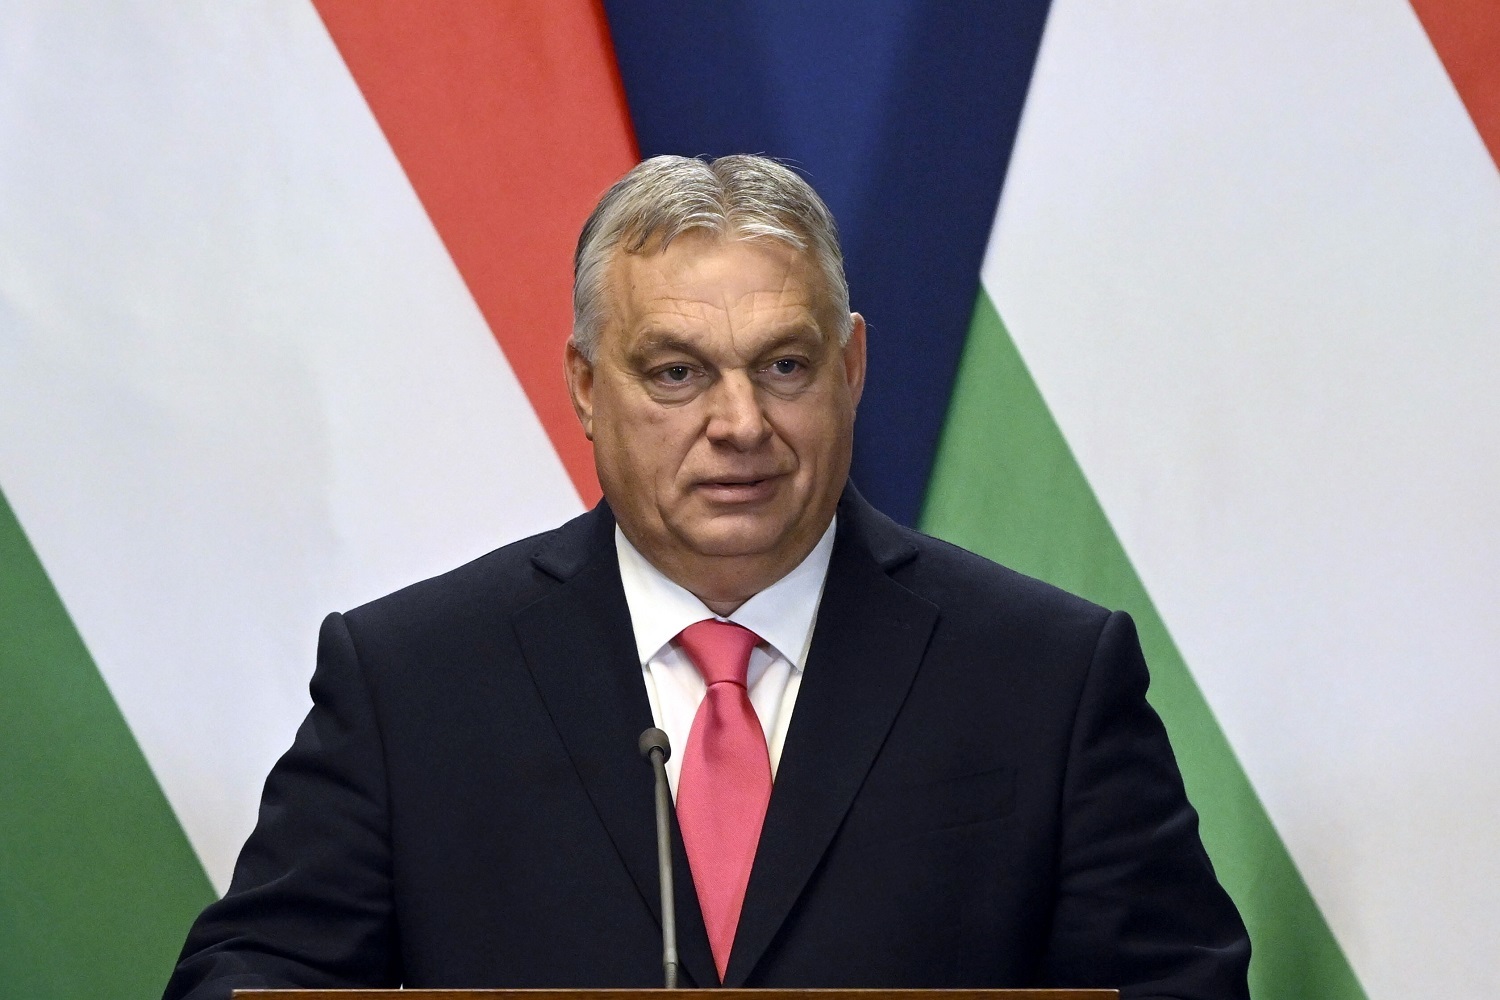  Орбан заявил, что ЕС недостаточно силен, чтобы РФ воспринимала его всерьез